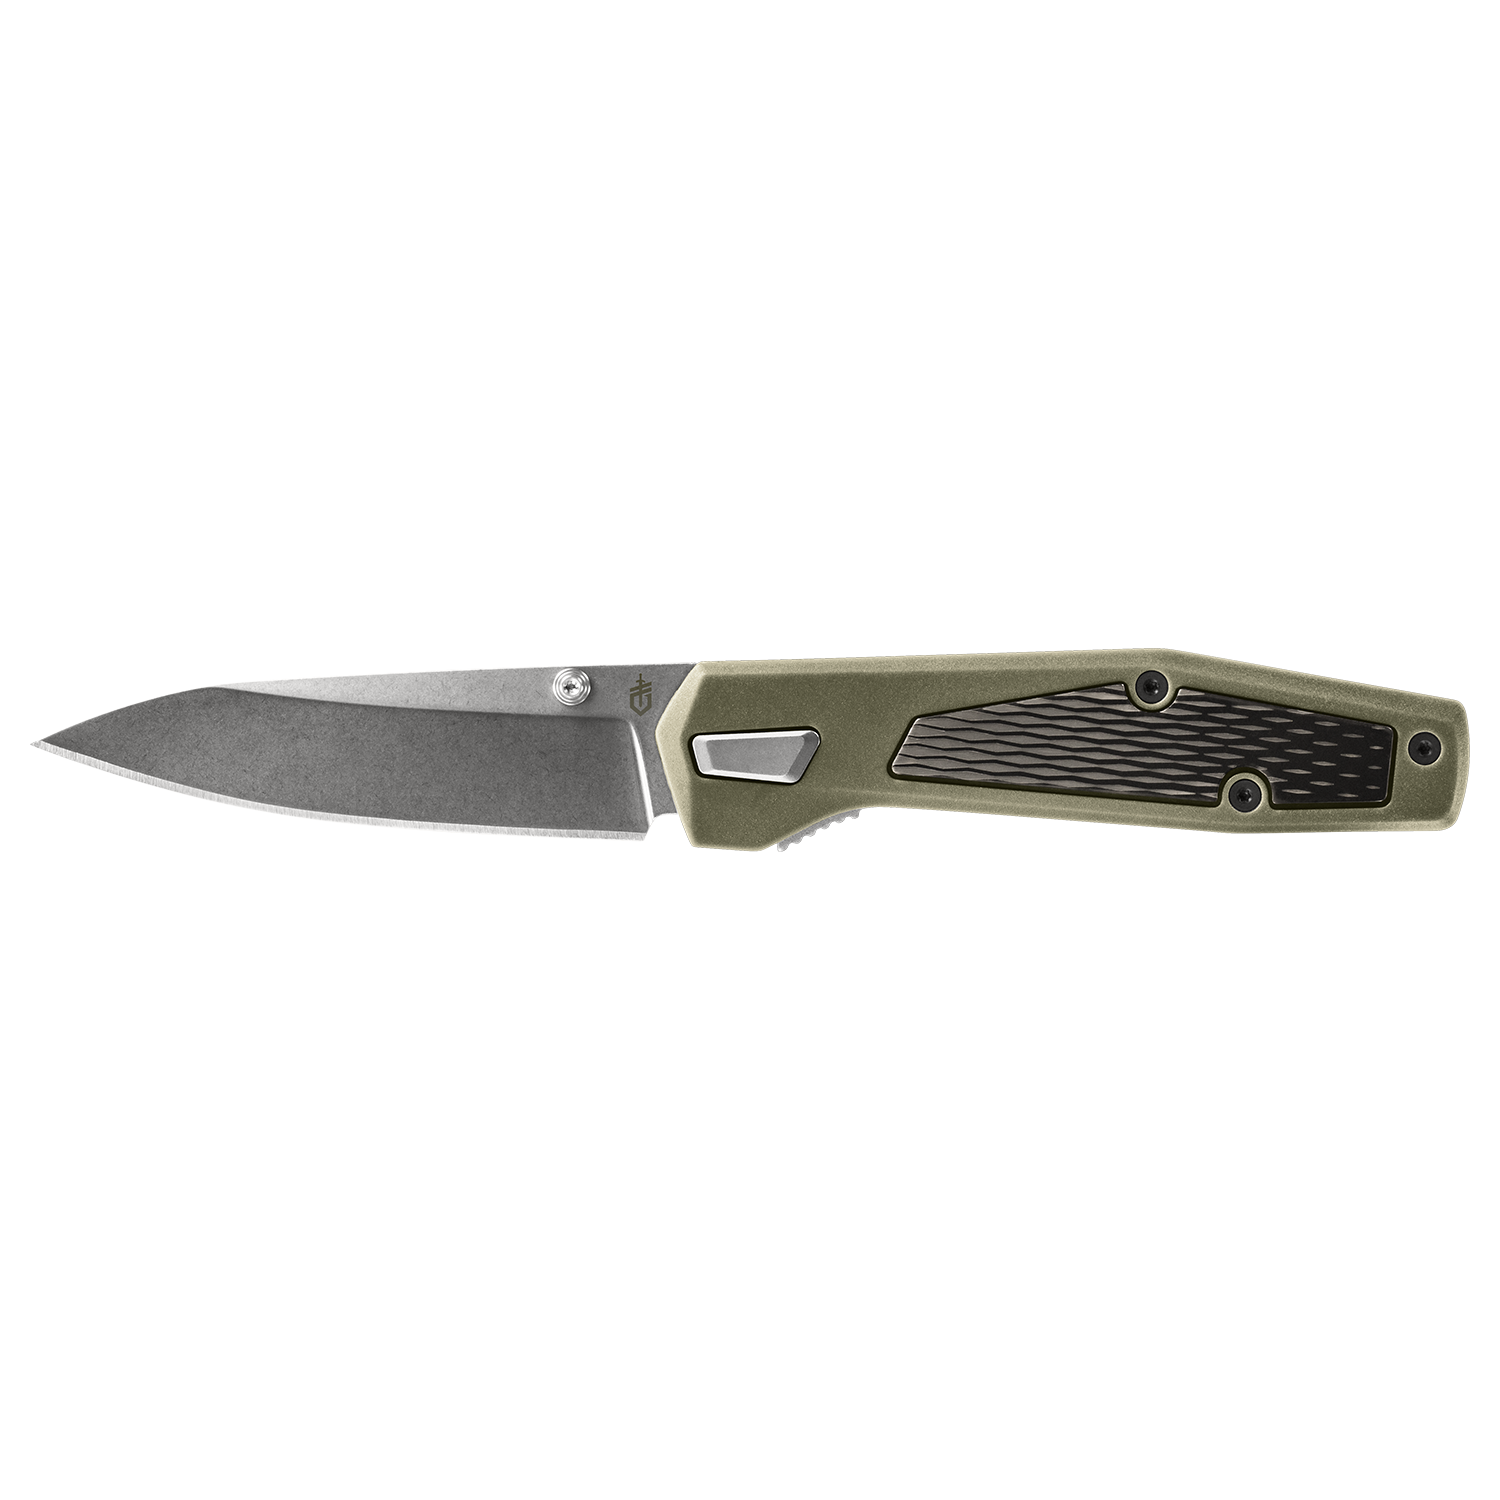 Ultralight camping gear - Gerber pocket knife sharpener. 